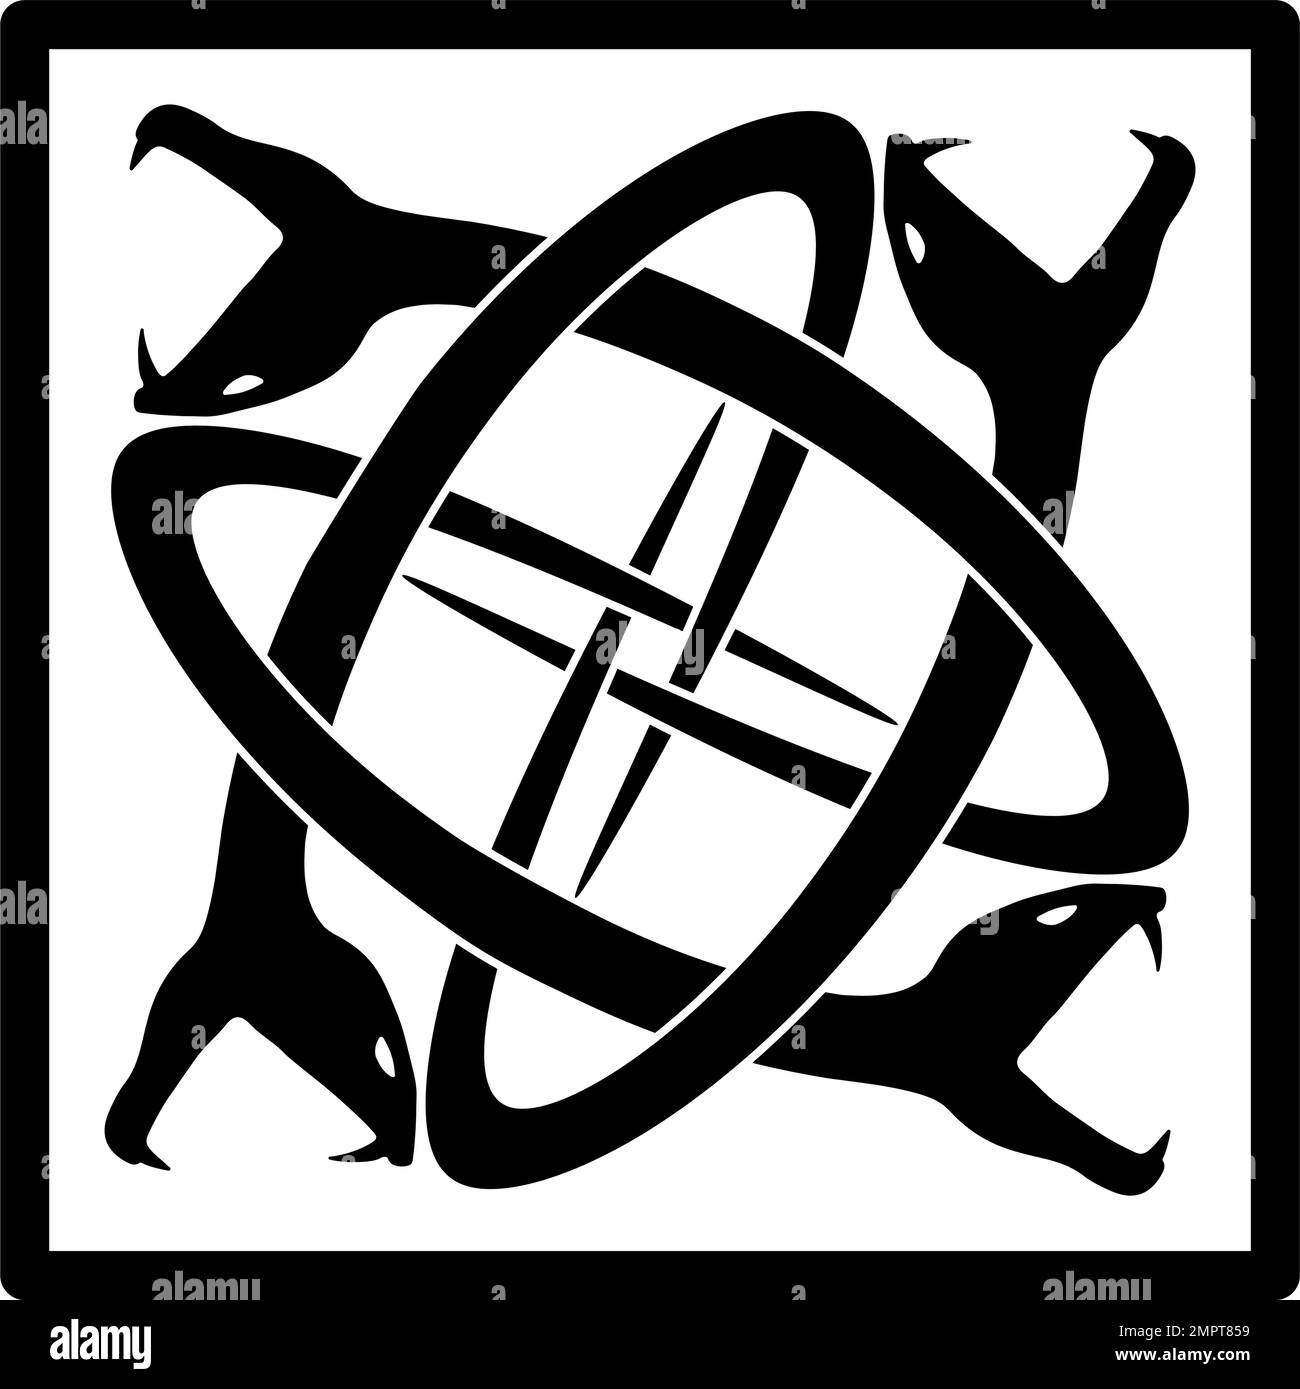 Quattro serpenti intrecciati racchiusi in un quadrato - nero su bianco Illustrazione Vettoriale